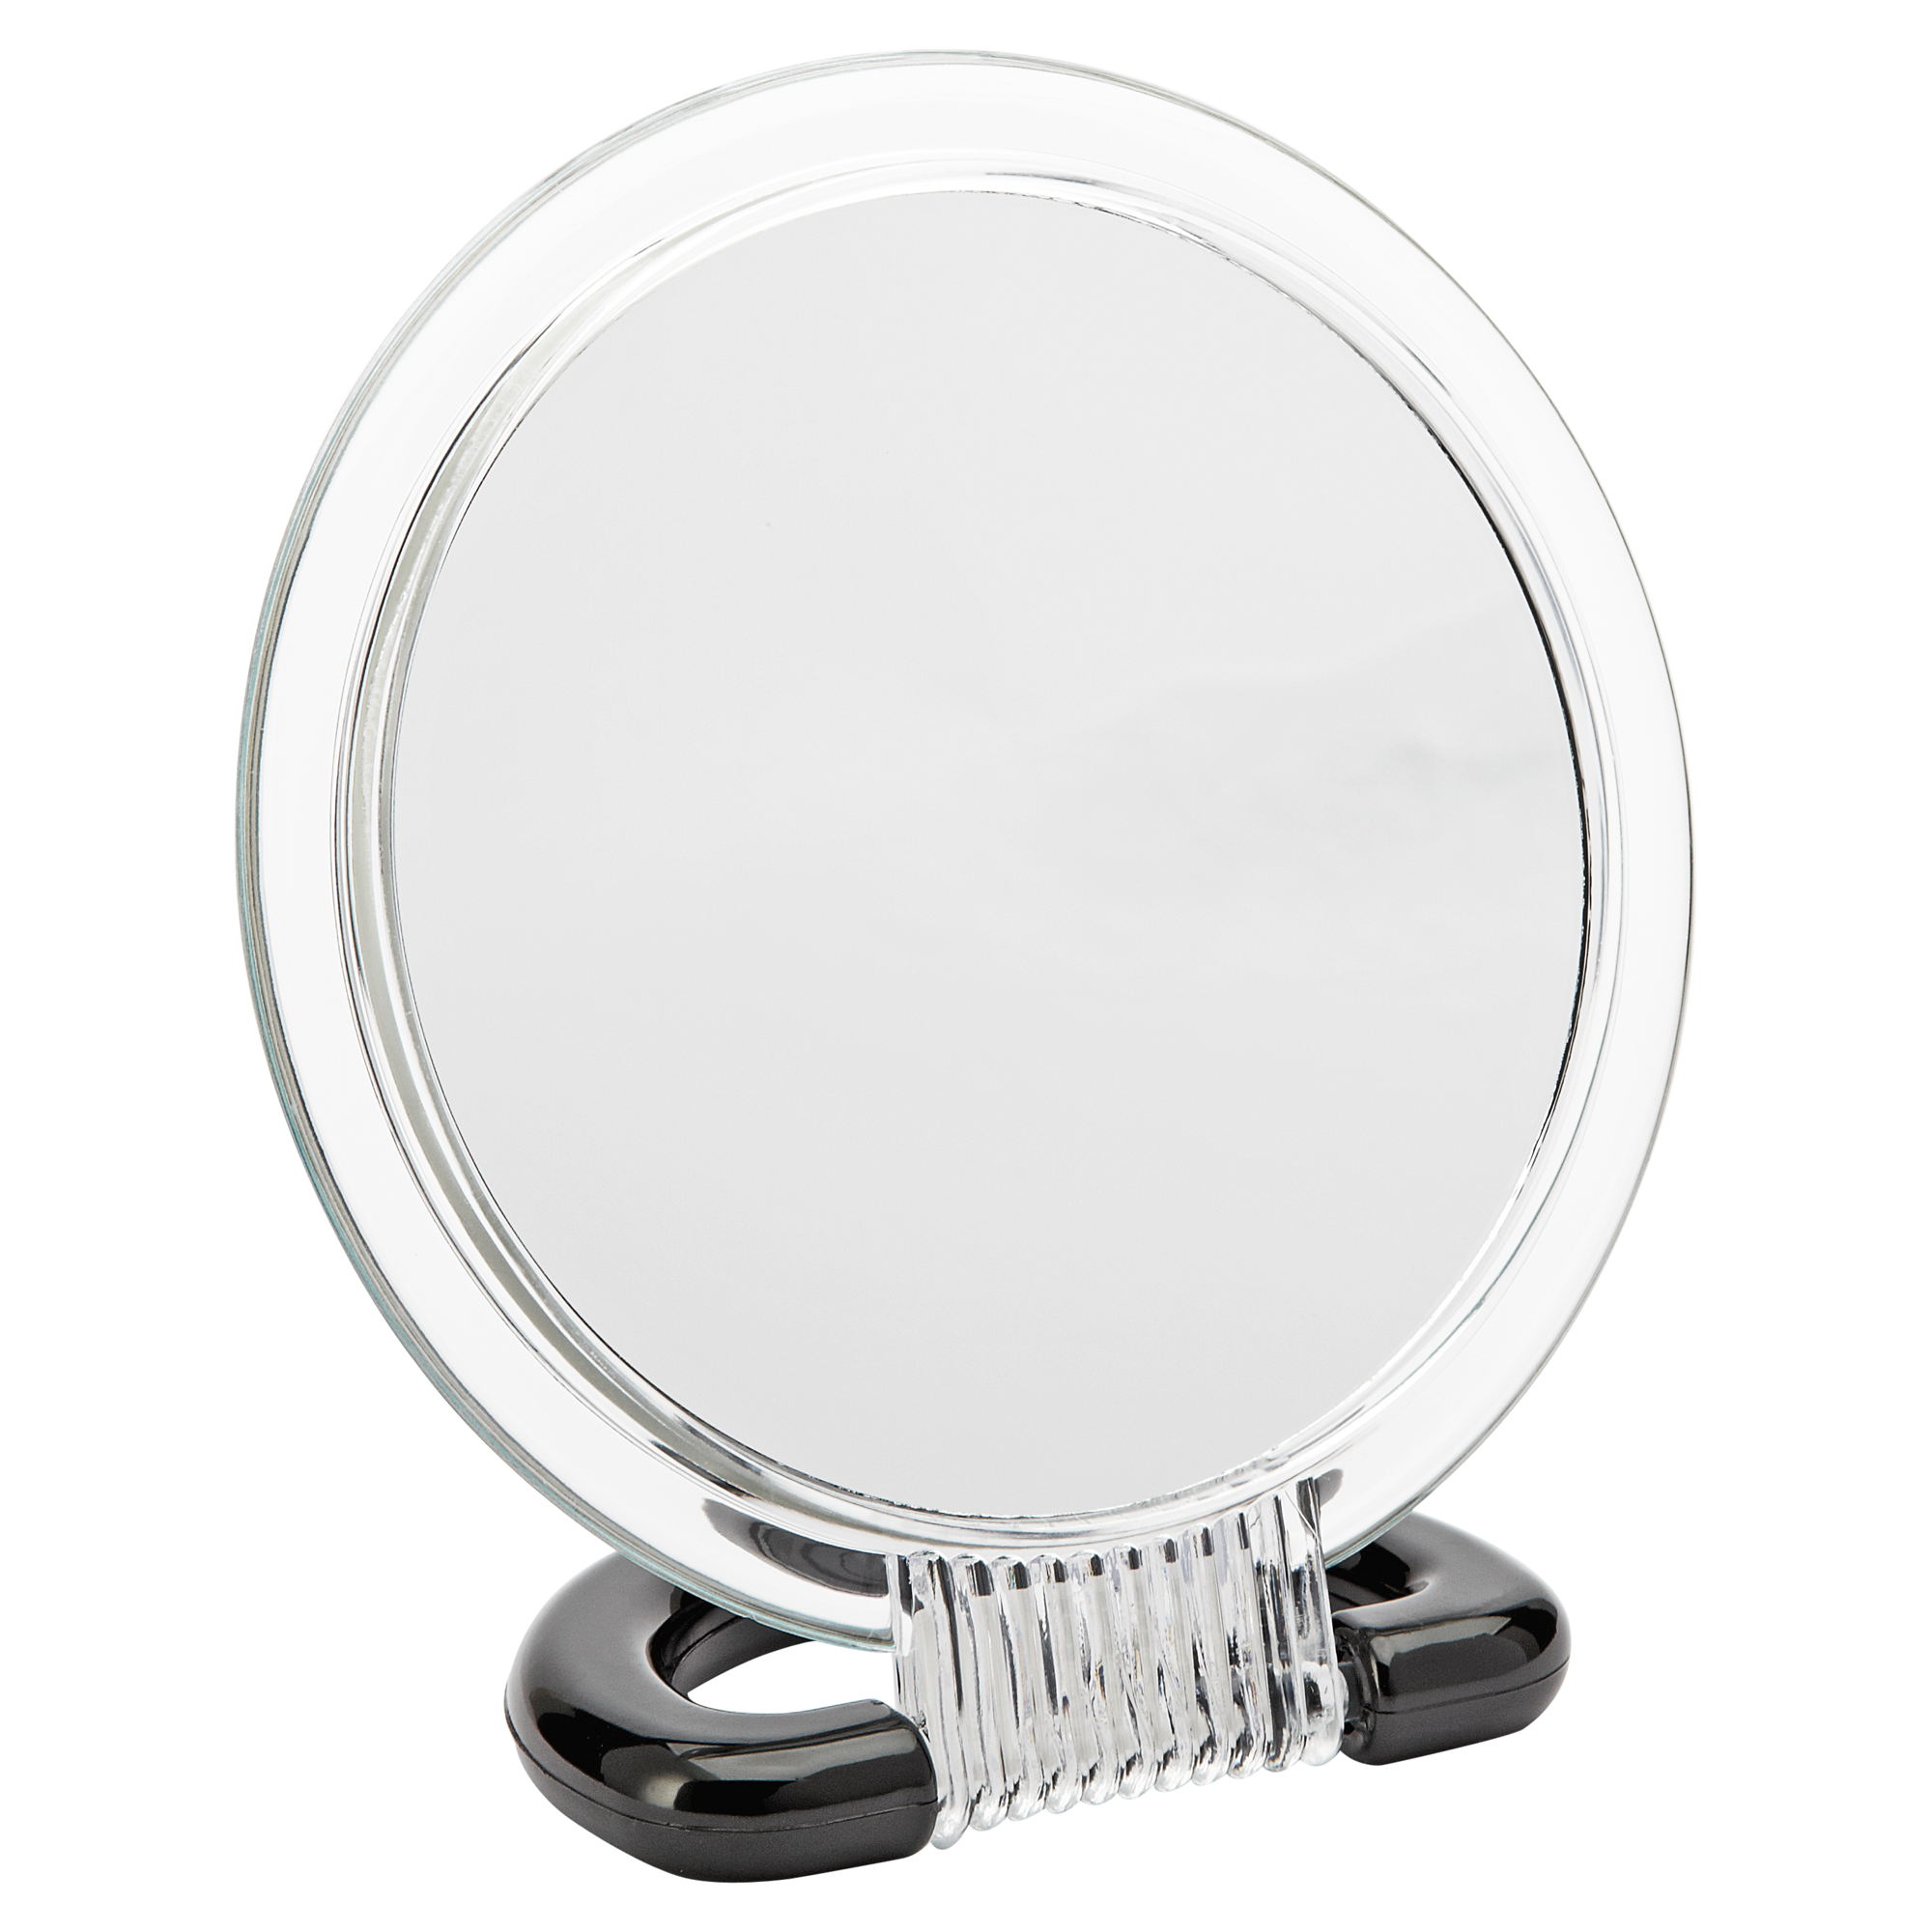 Kosmetikspiegel 3-fache Vergrößerung + product picture